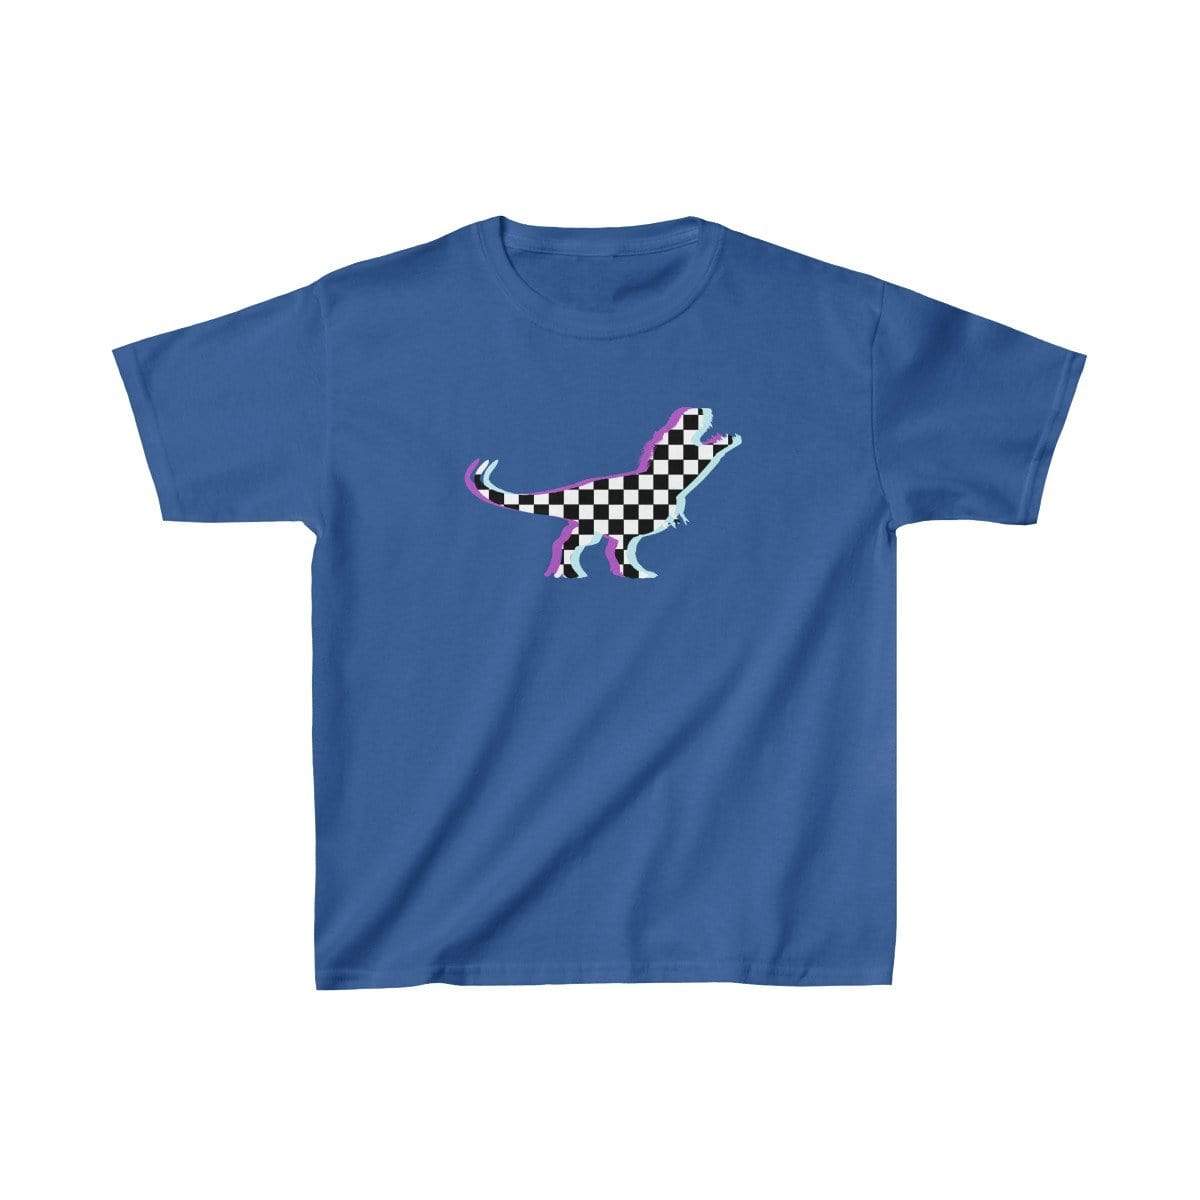 Printify Kids clothes Royal / XS Glitch Aesthetic TRex Checker T-Shirt Kids